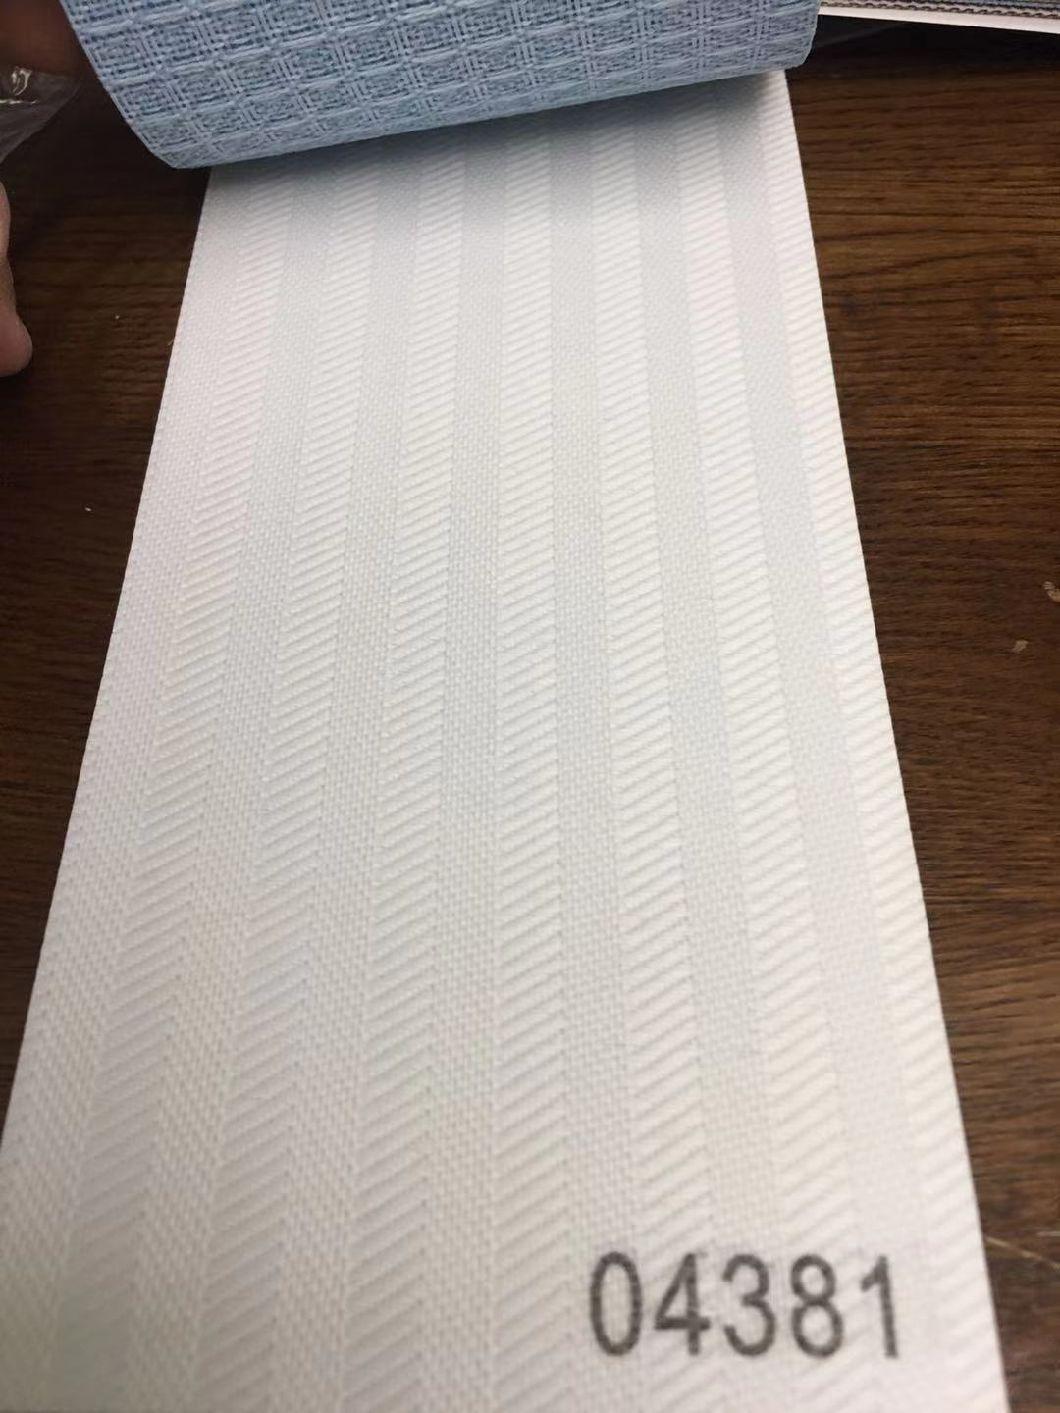 V9 Vertical Blinds Fabric